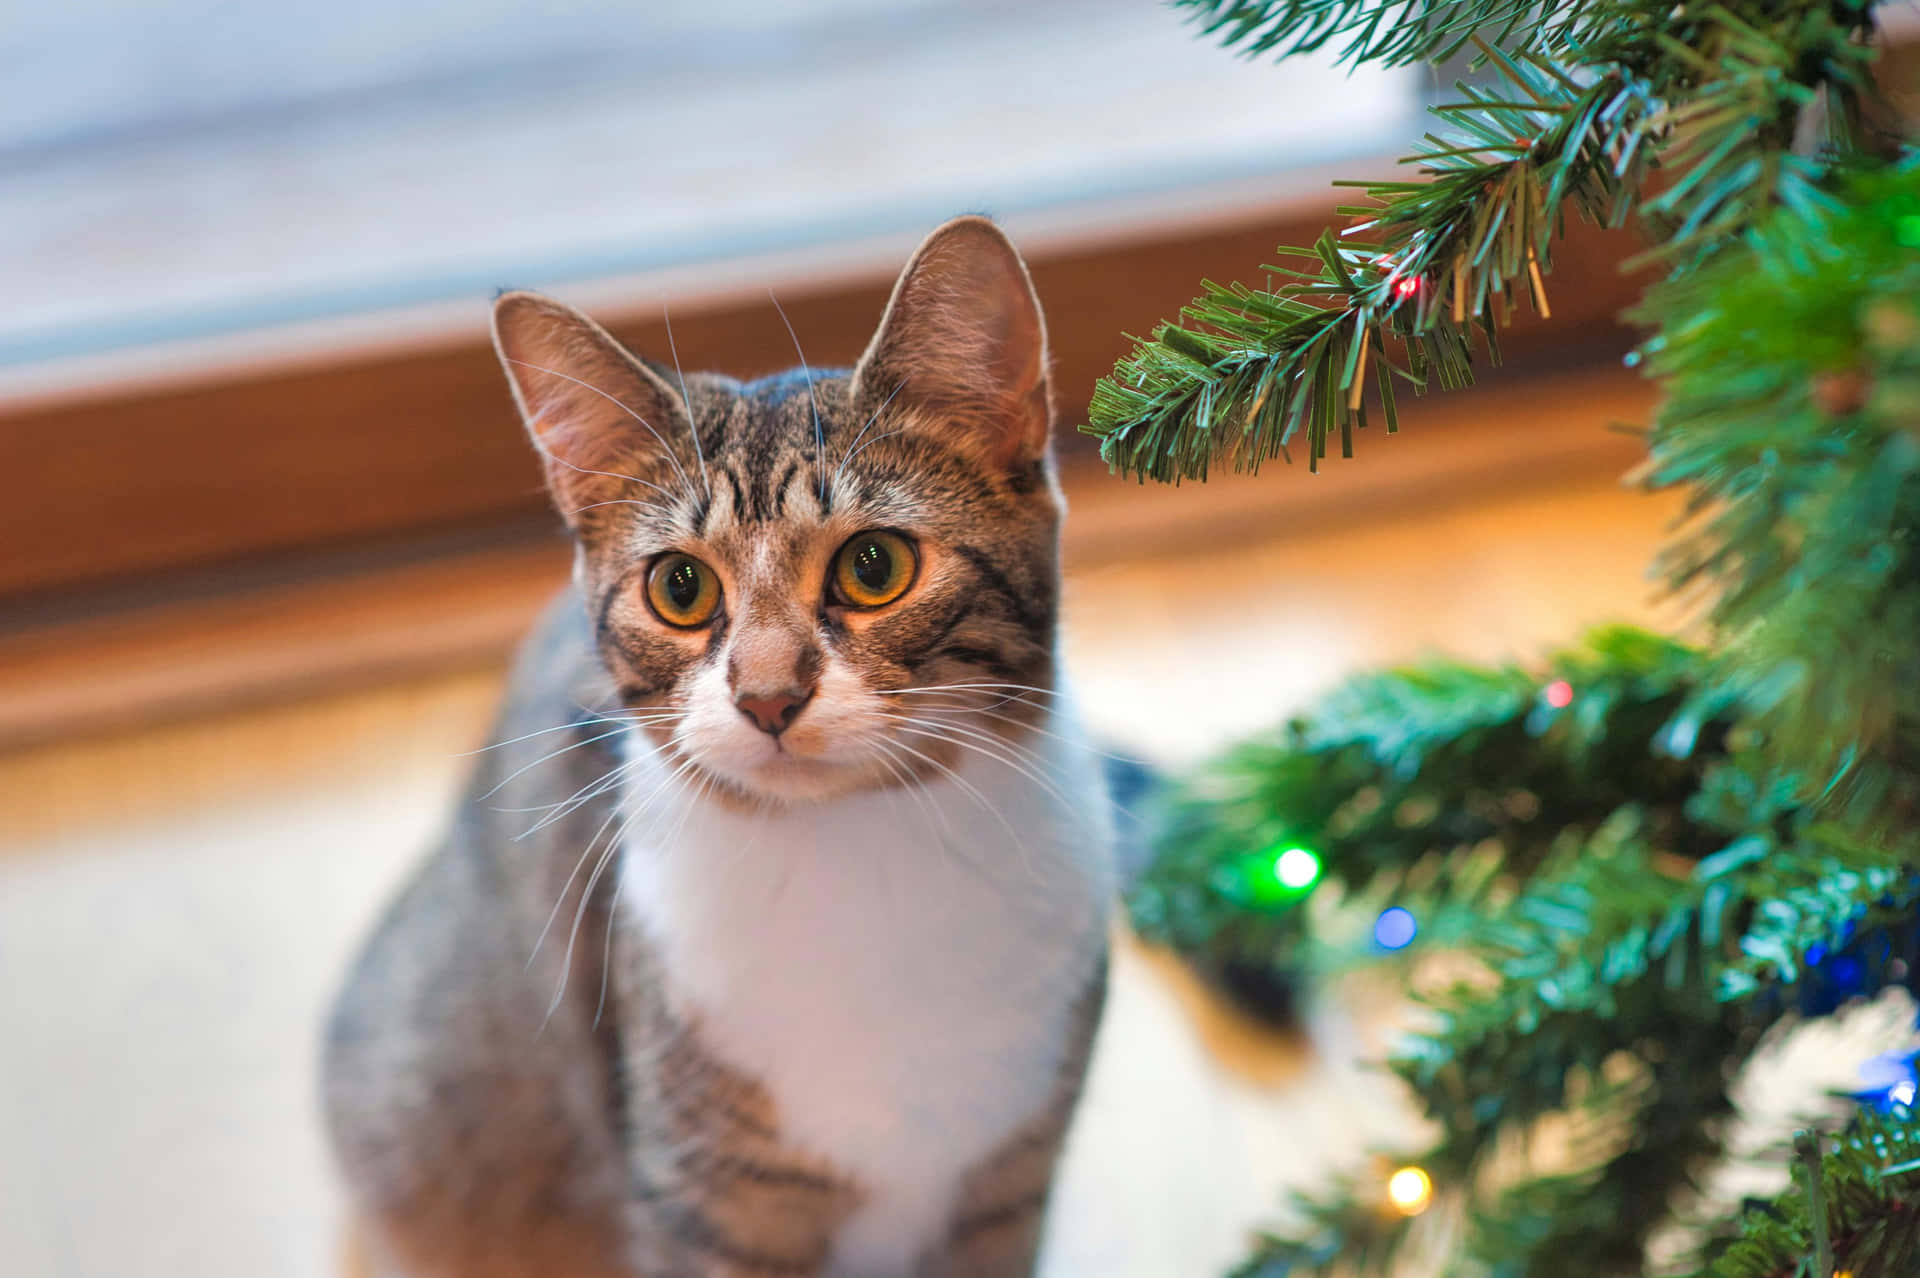 Festive Tabby Cat Beside Christmas Tree.jpg Wallpaper